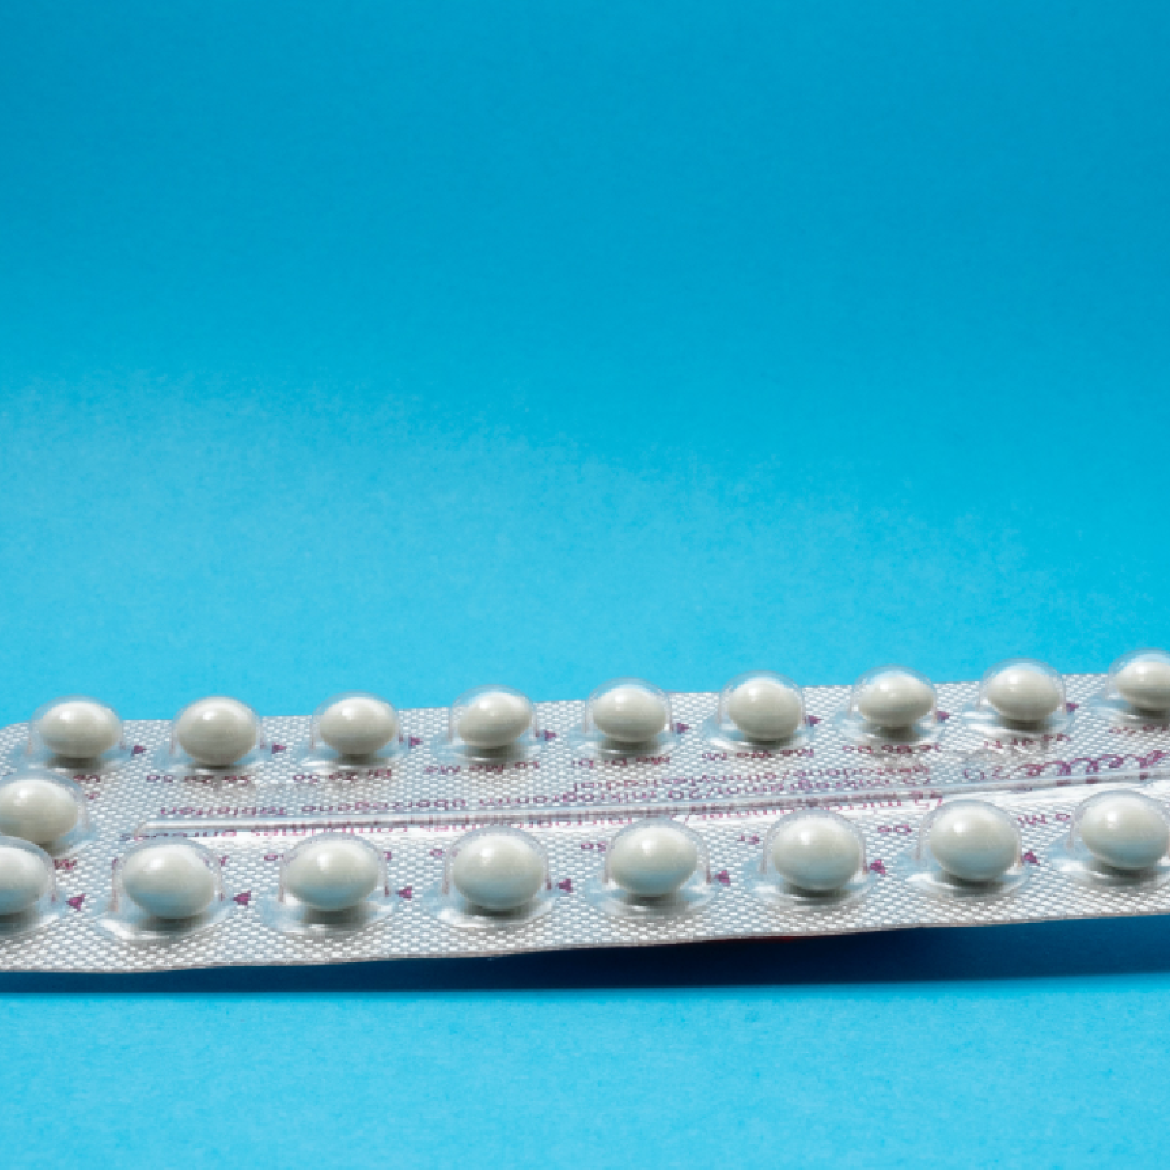 Een strip van de anticonceptiepil